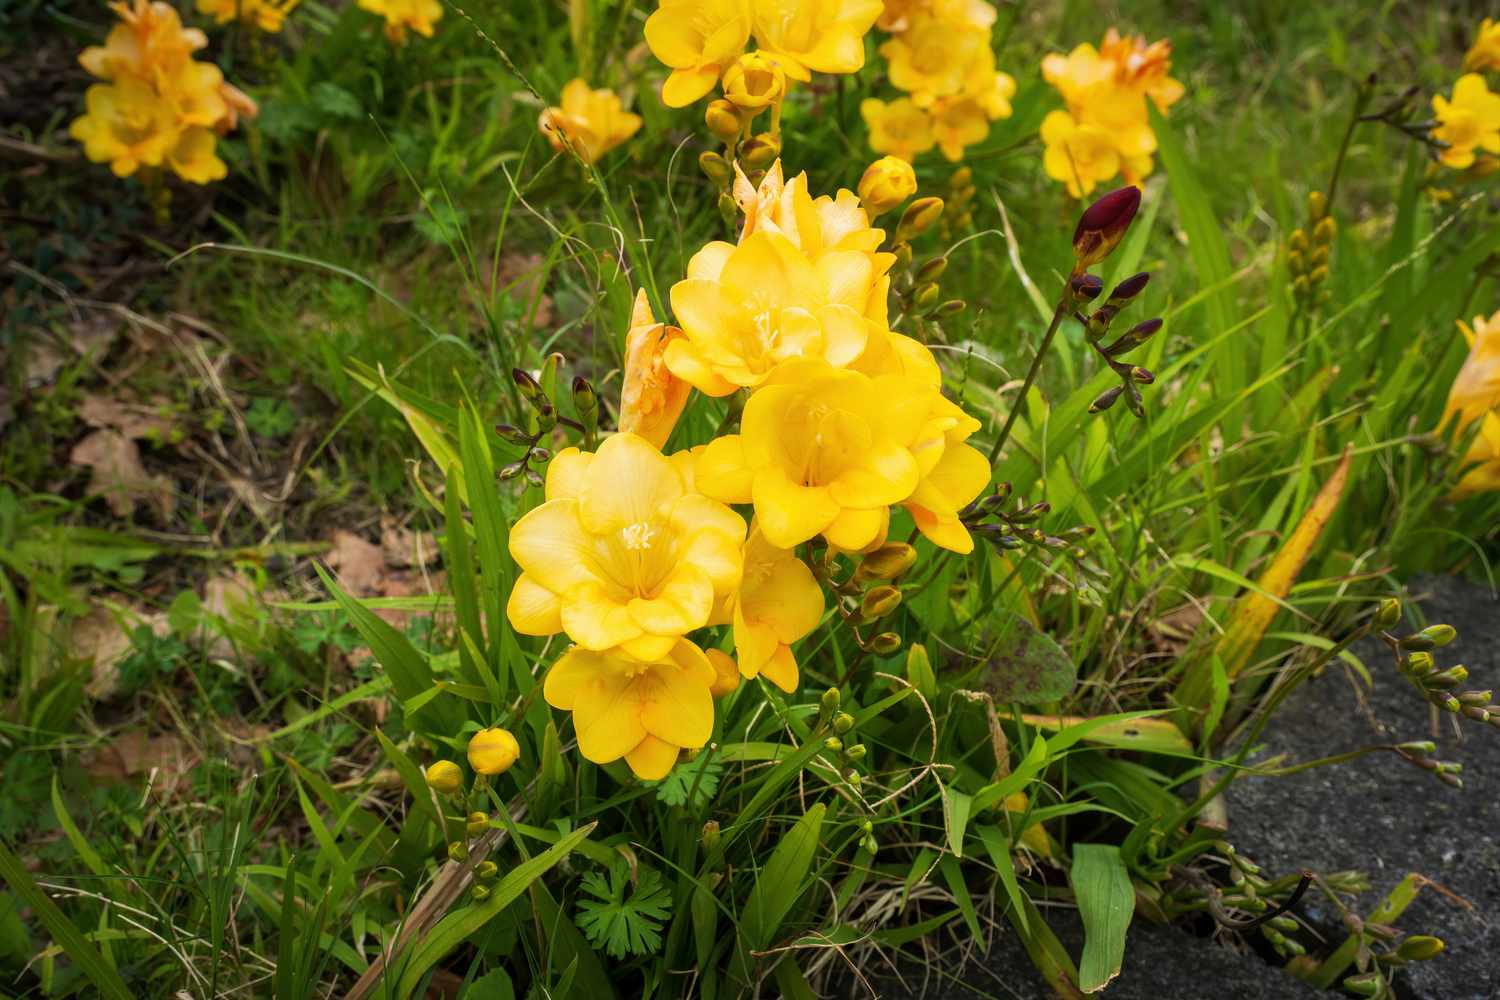 Bulbes de freesia à fleurs tubulaires jaunes regroupées et entourées d'herbe